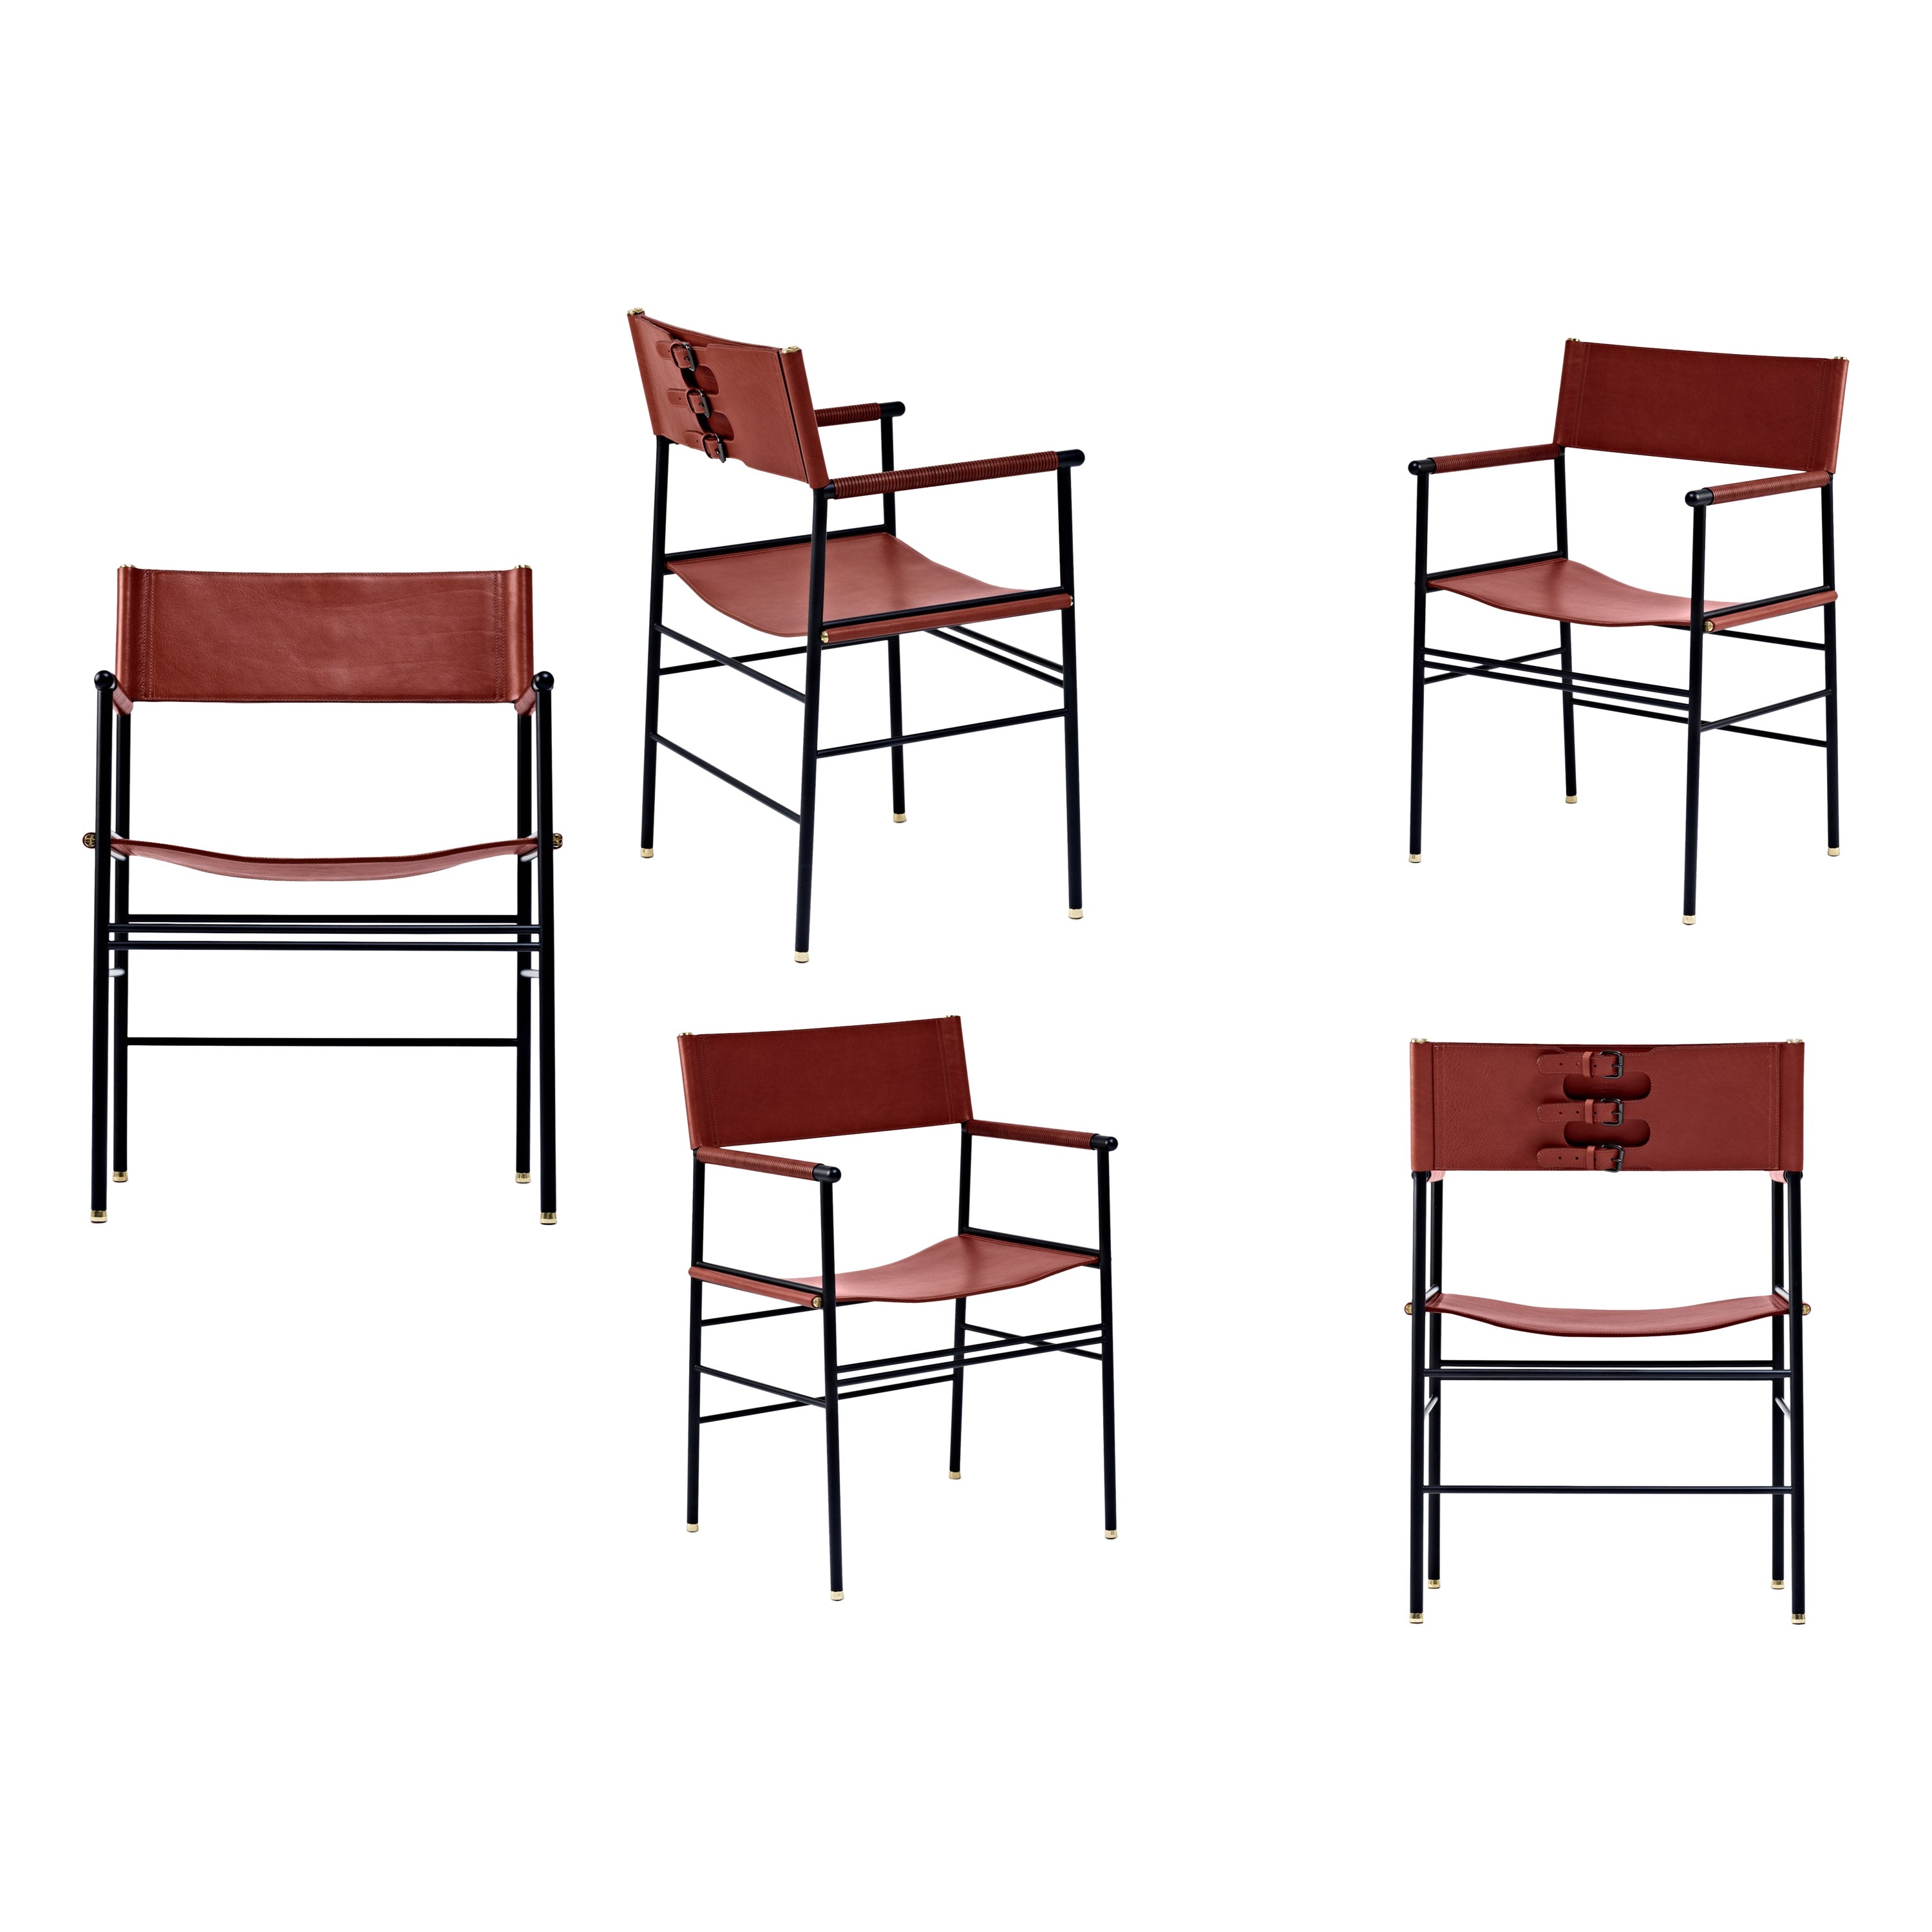 Ensemble de 5 fauteuils contemporains artisanaux en cuir cognac et métal en caoutchouc noir